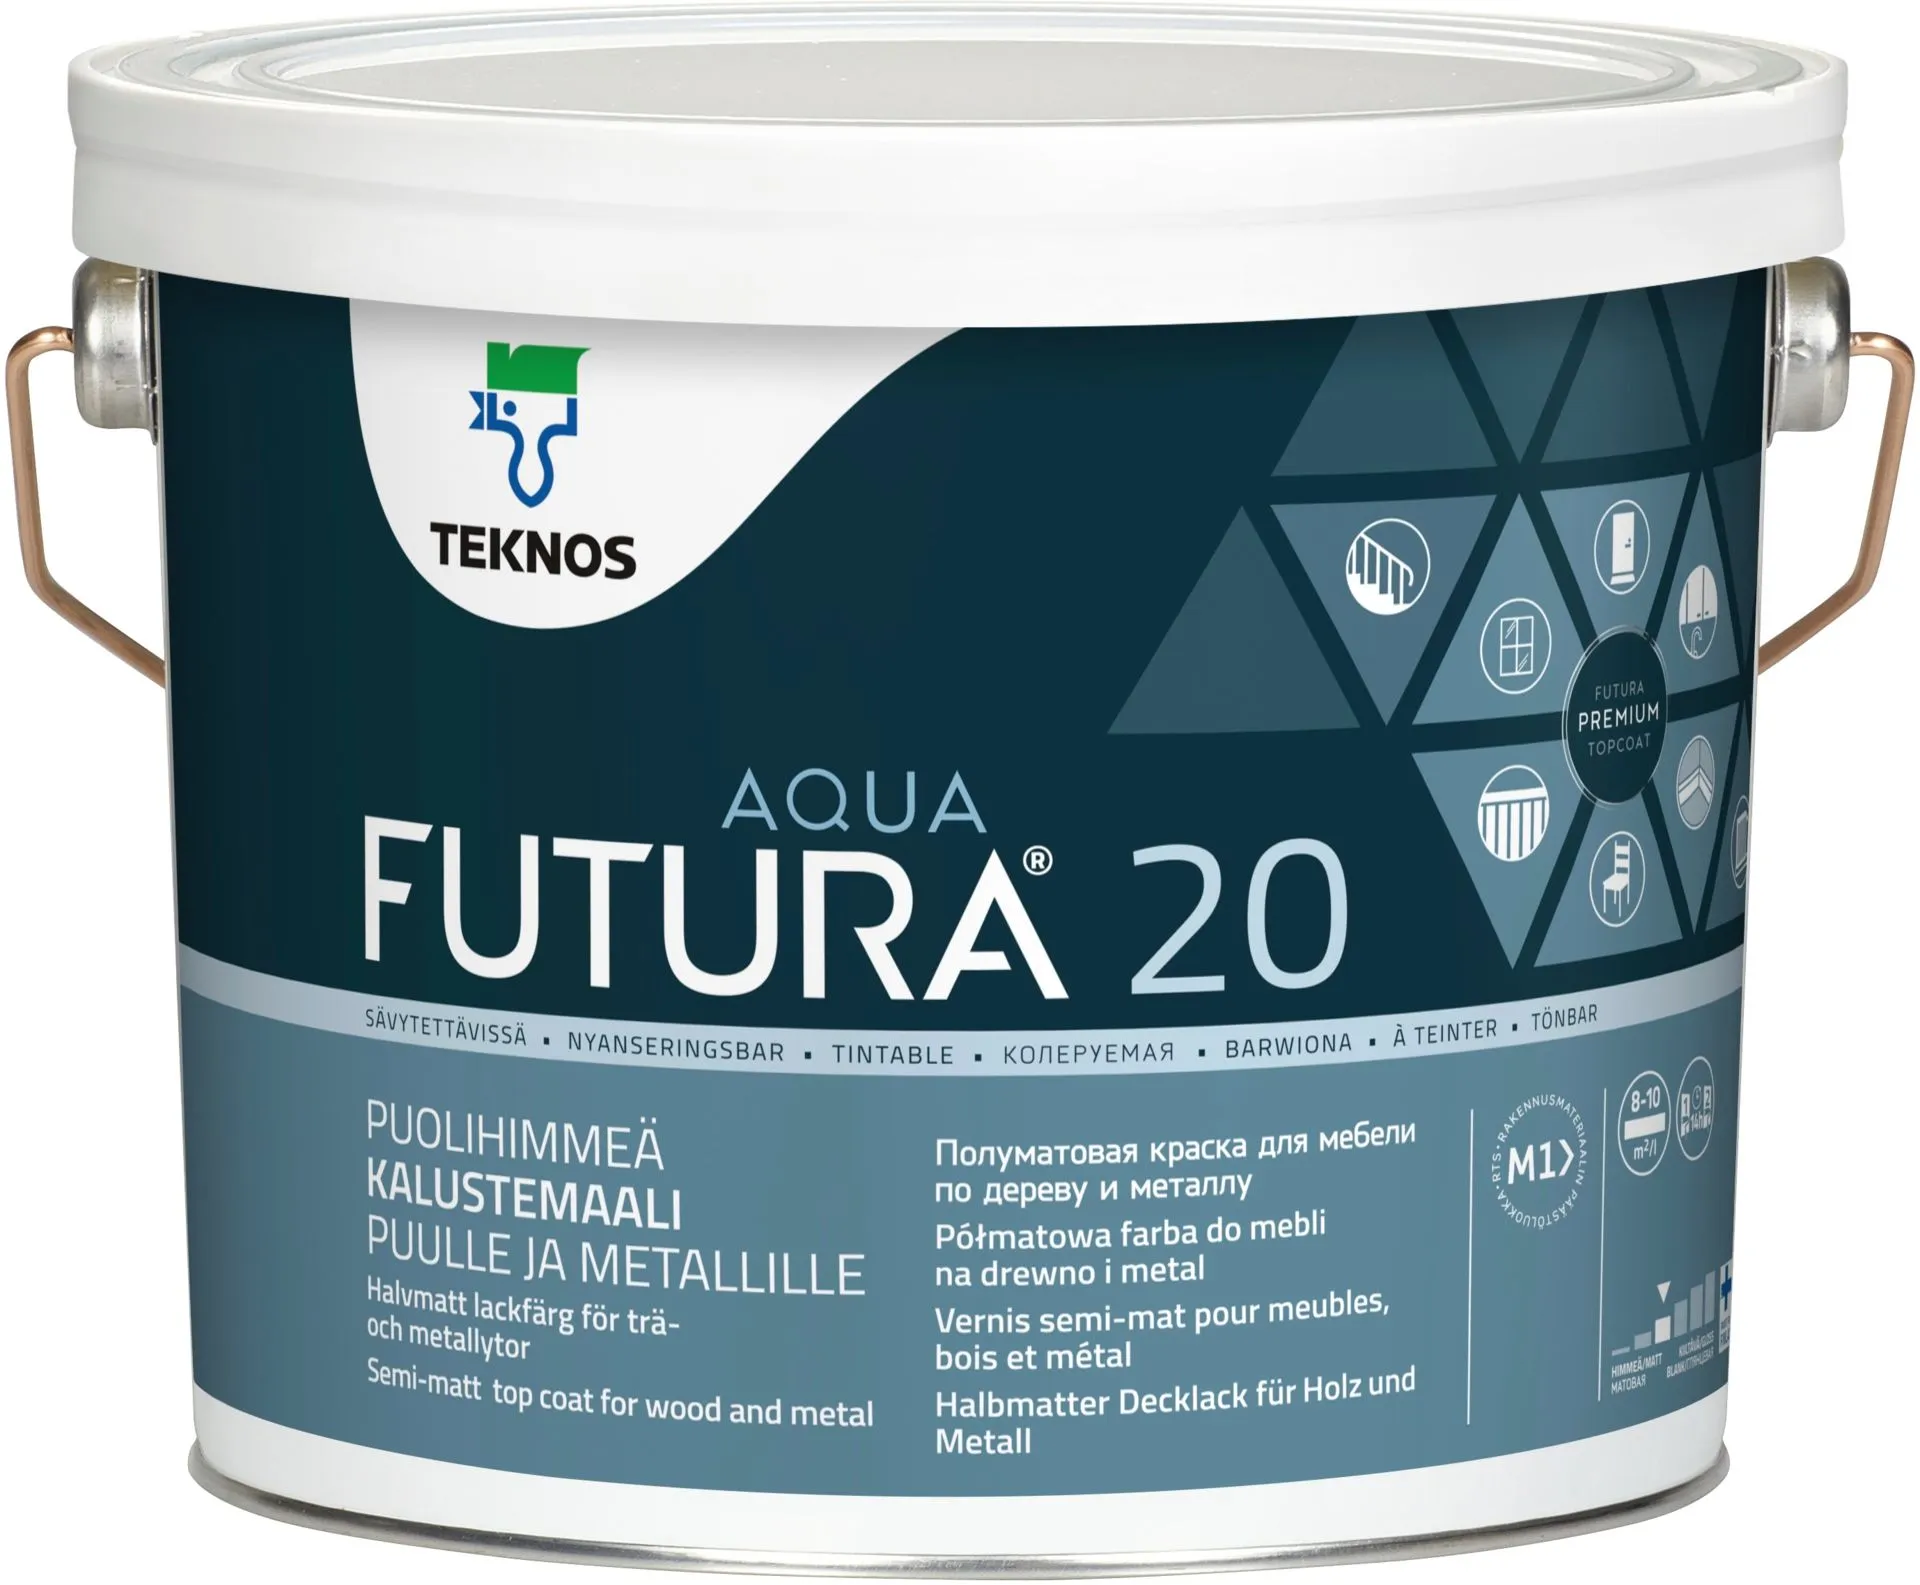 Teknos Futura Aqua 20 Kalustemaali 2,7L PM3 sävytettävä puolihimmeä